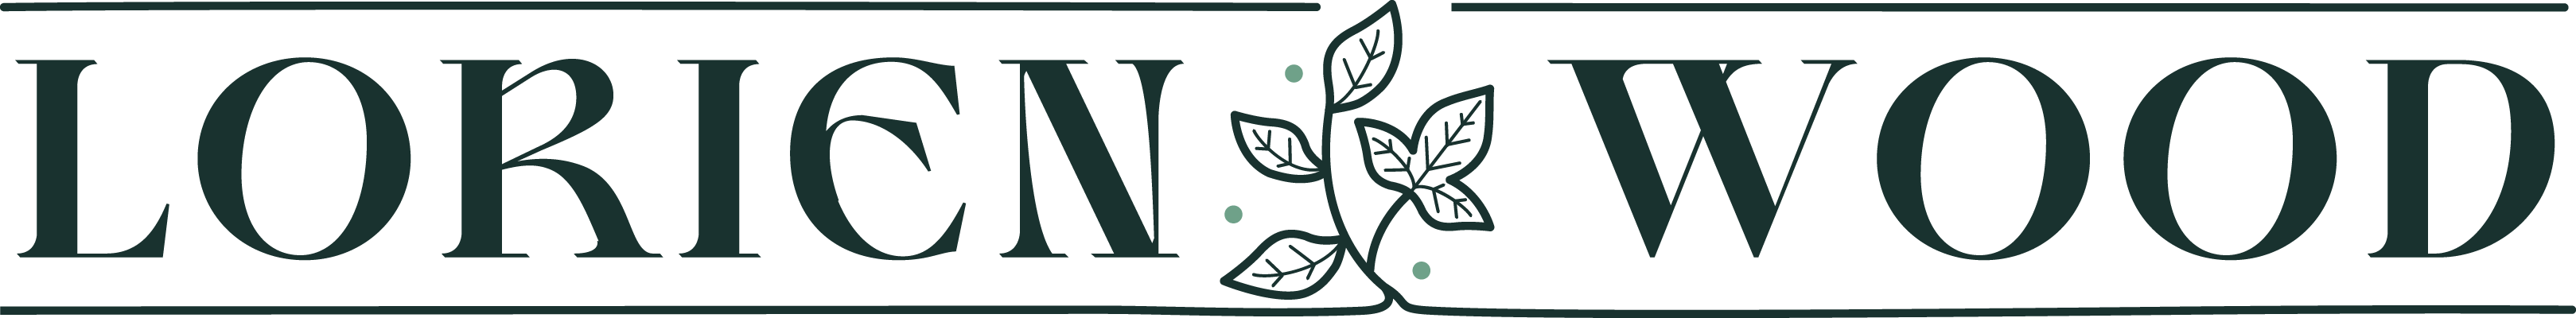 Logo for Lorien Wood School